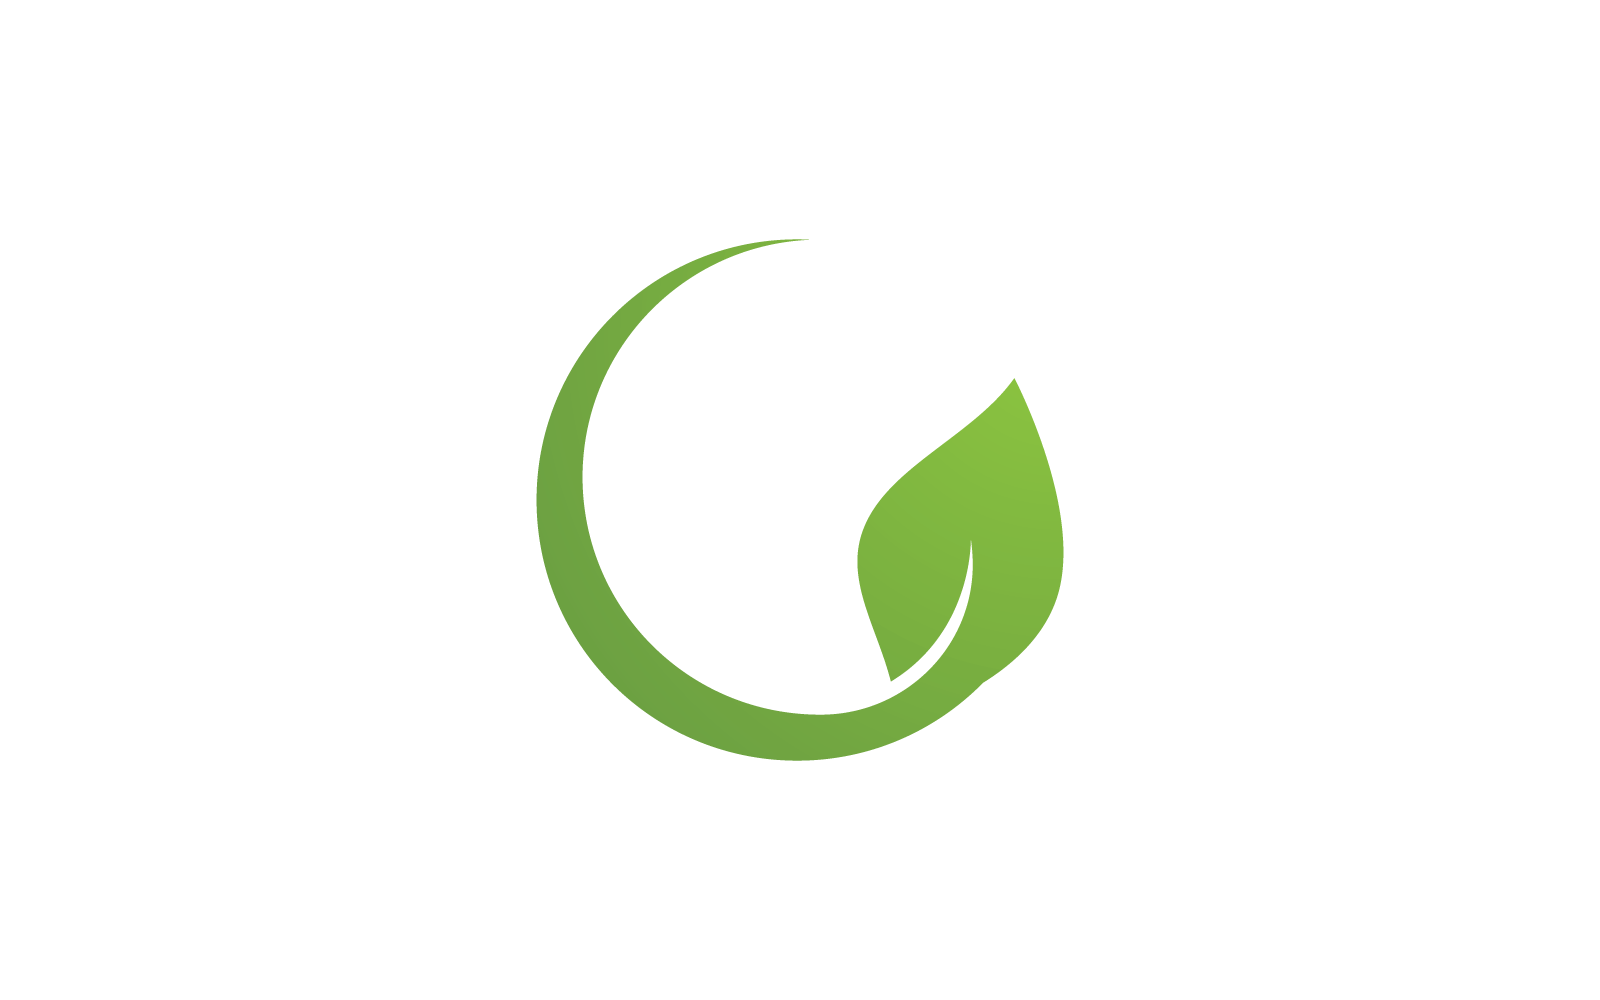 Eco green leaf logo illustration nature flat design